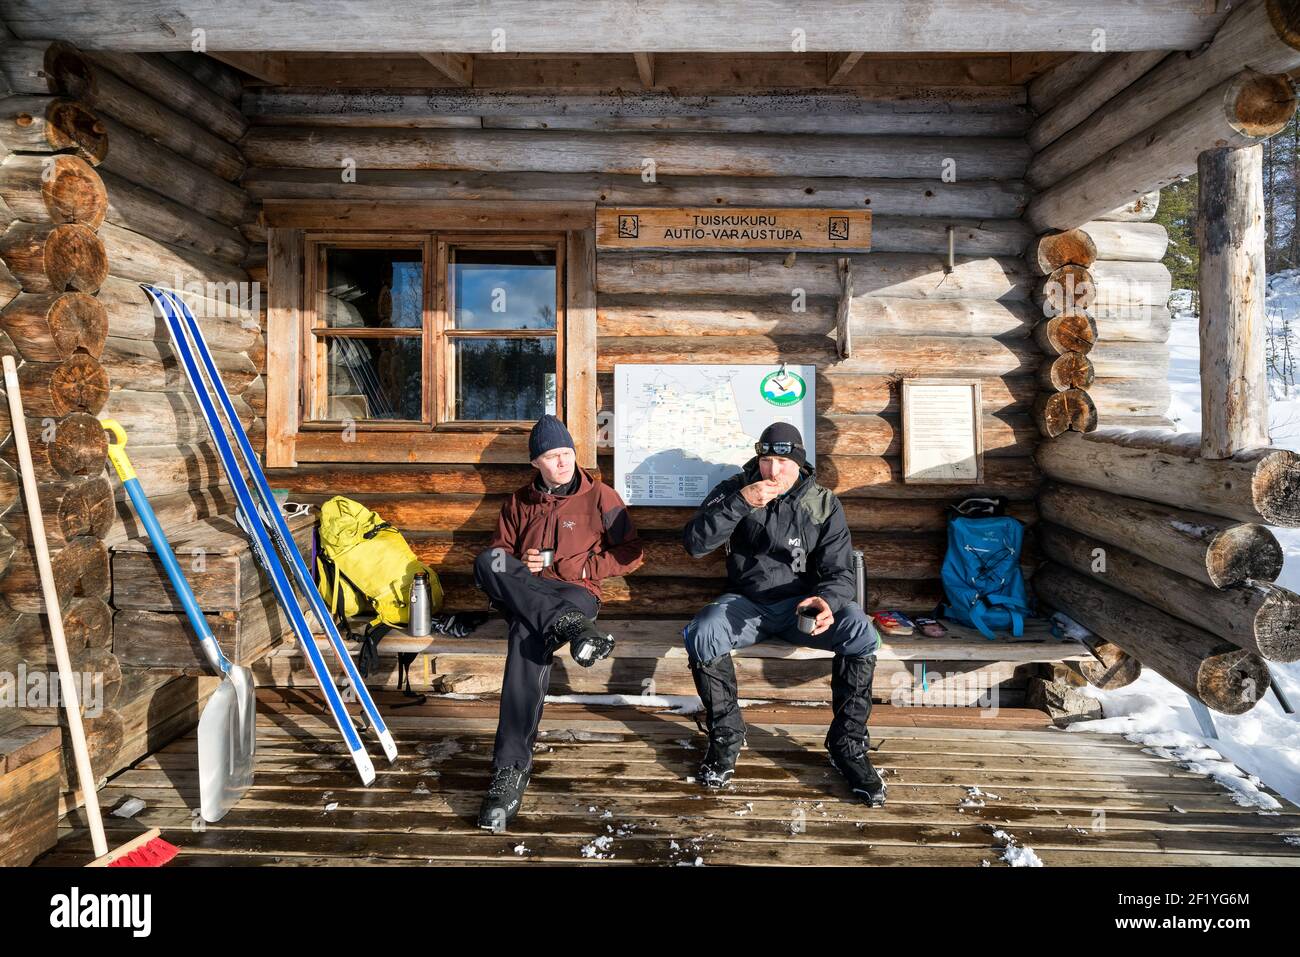 Faire une pause dans la cabane sauvage ouverte de Tuiskukuru tout en faisant du ski dans le parc national d'Urho Kekkonen, Sodankylä, Laponie, Finlande Banque D'Images